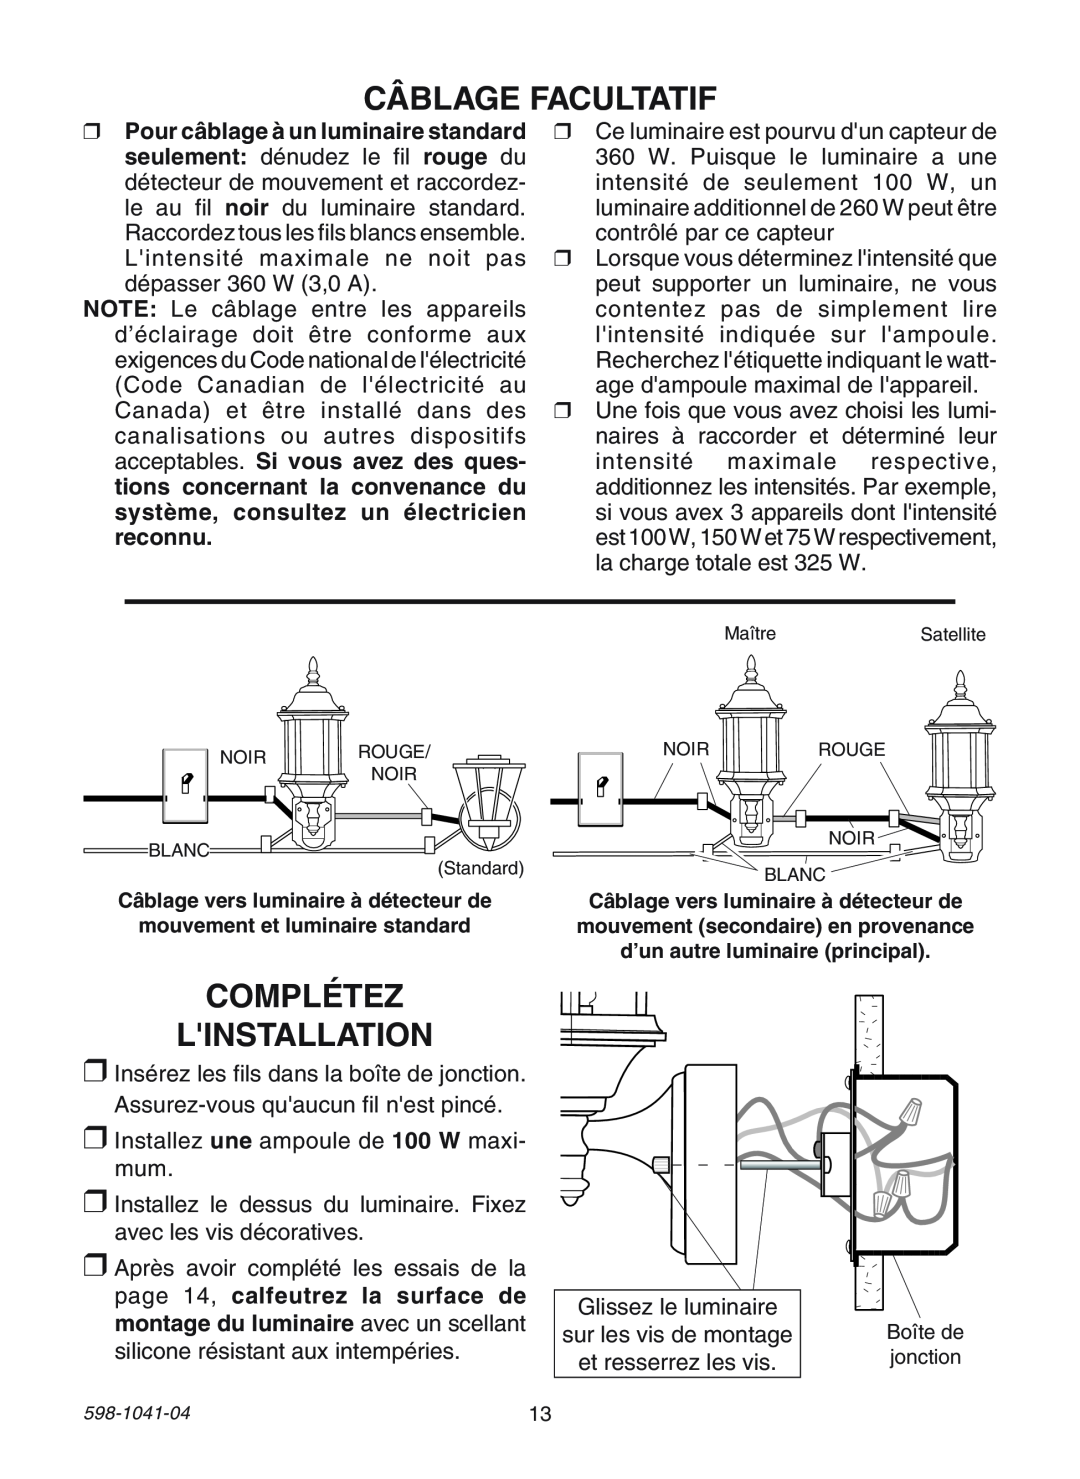 Heath Zenith 598-1041-04 manual Câblage Facultatif, Complétez Linstallation 